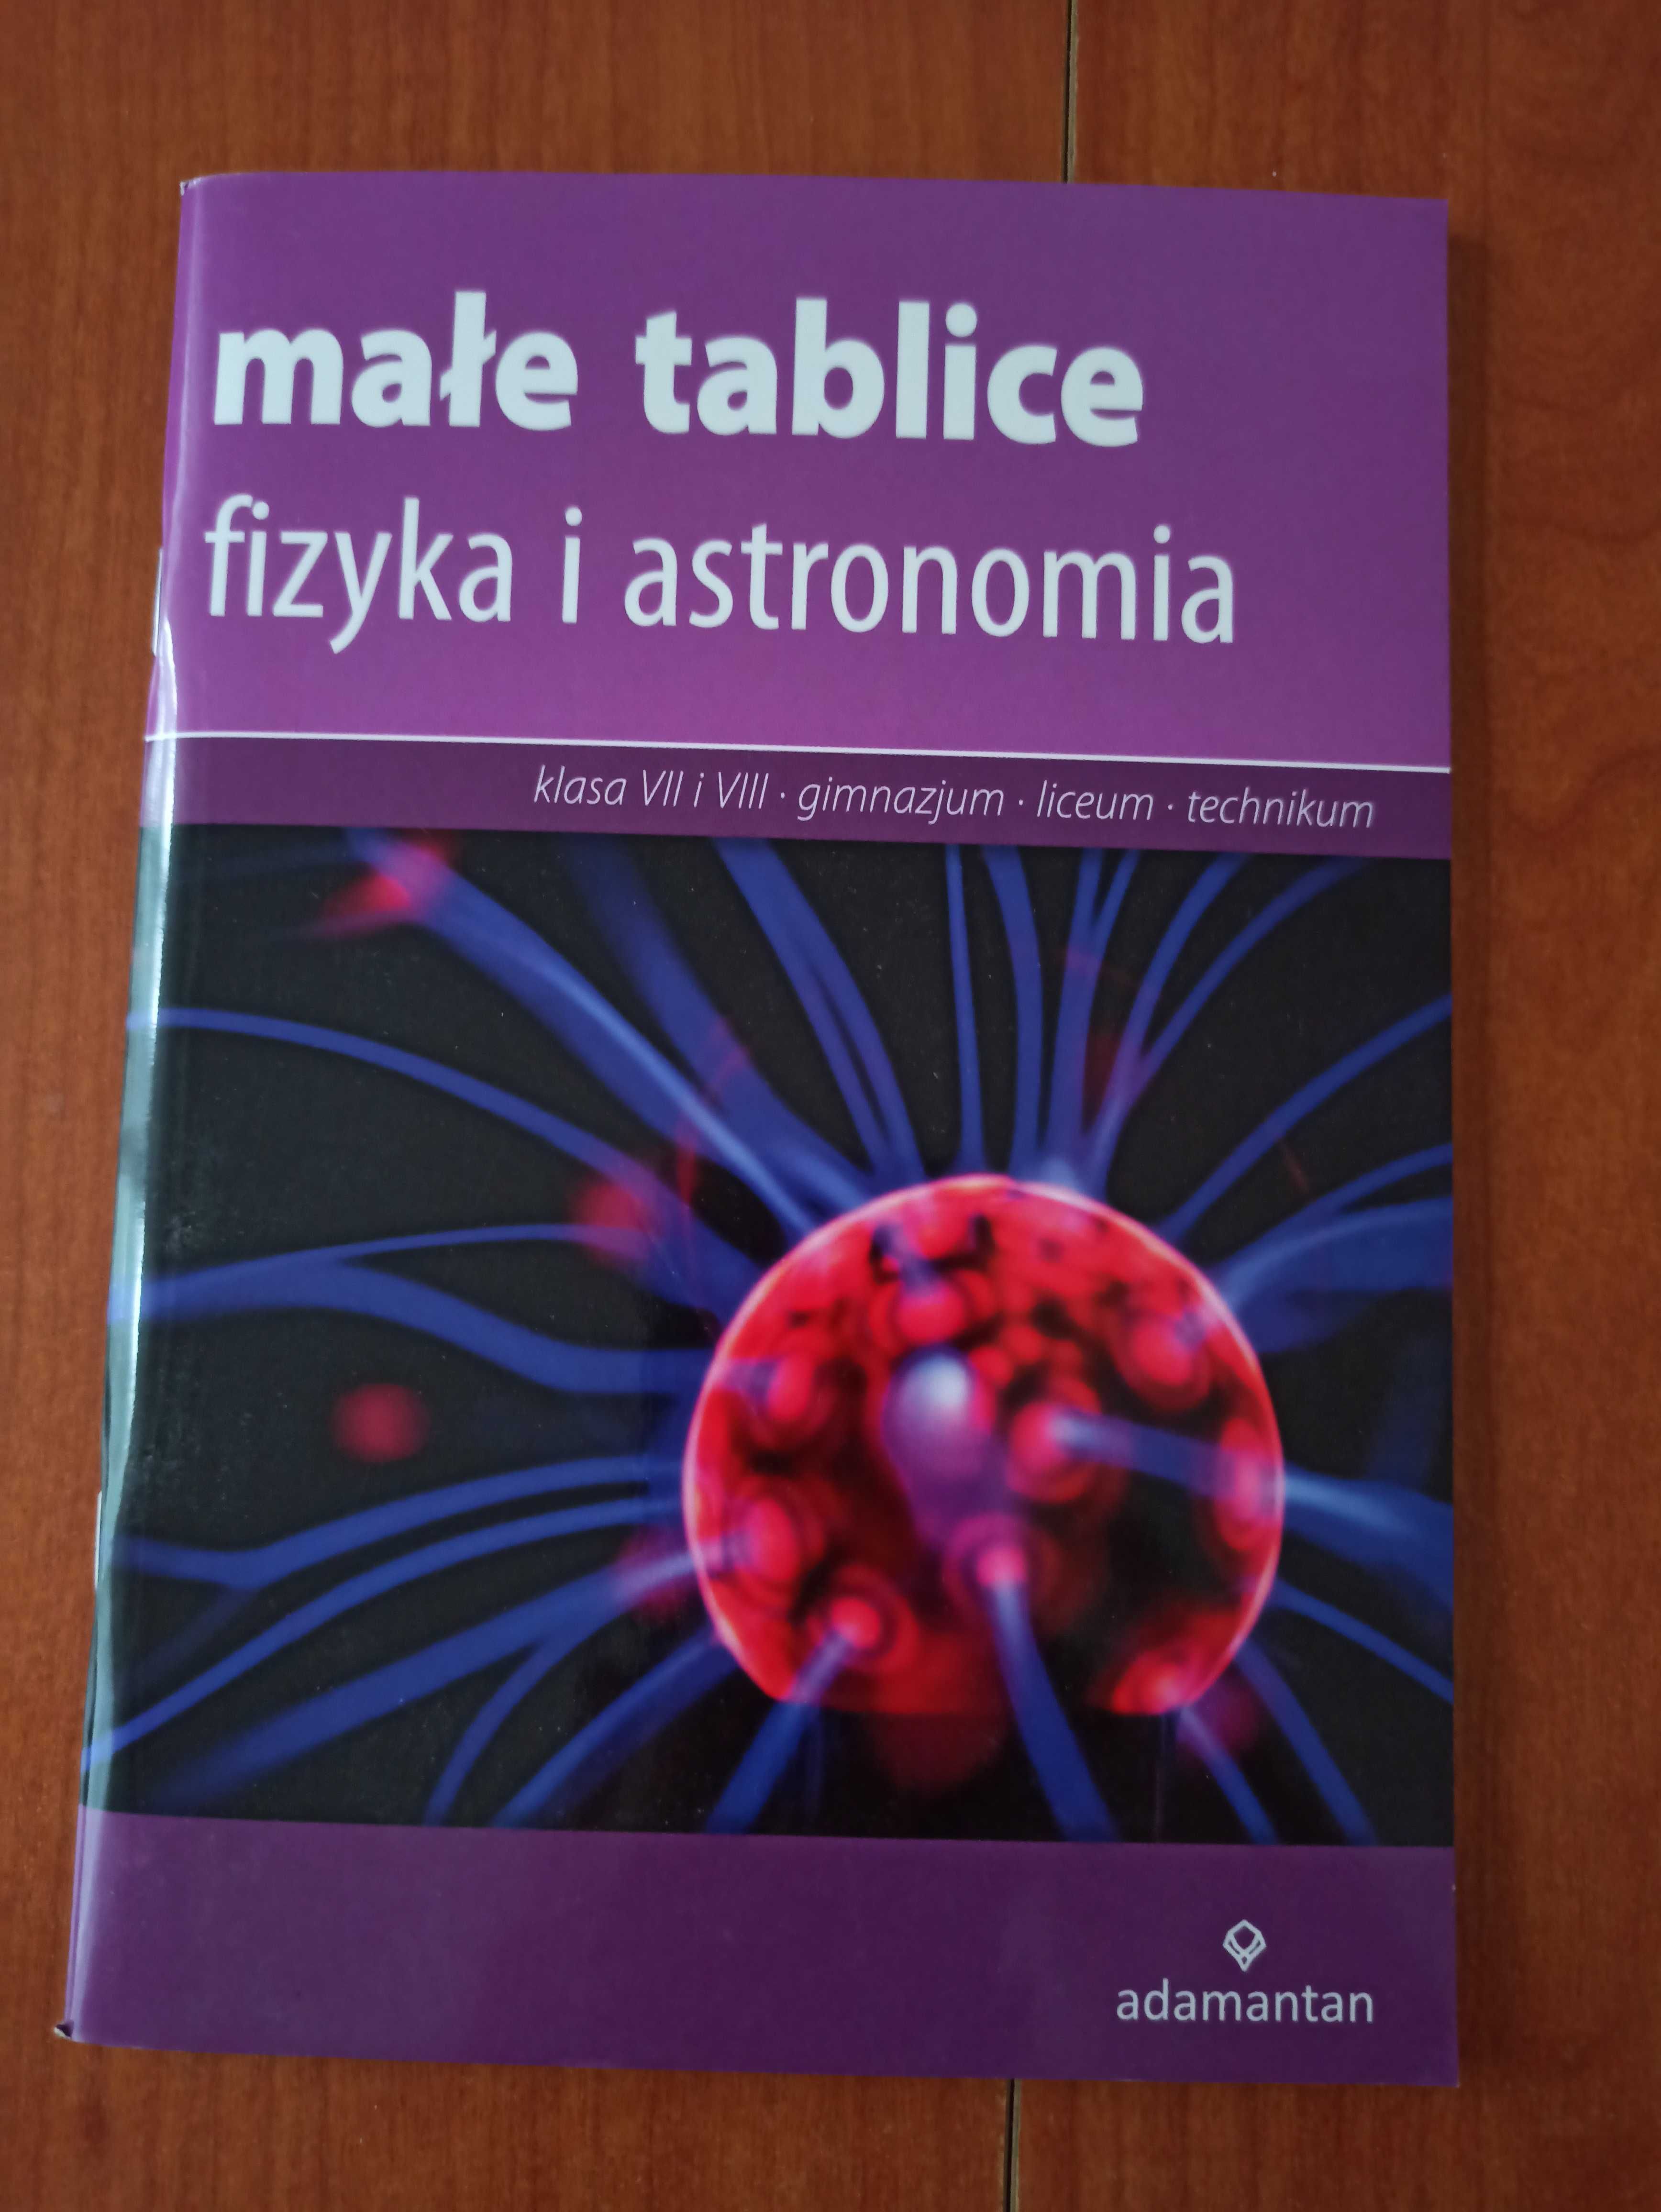 Książka Małe tablice. Fizyka i astronomia, nowa